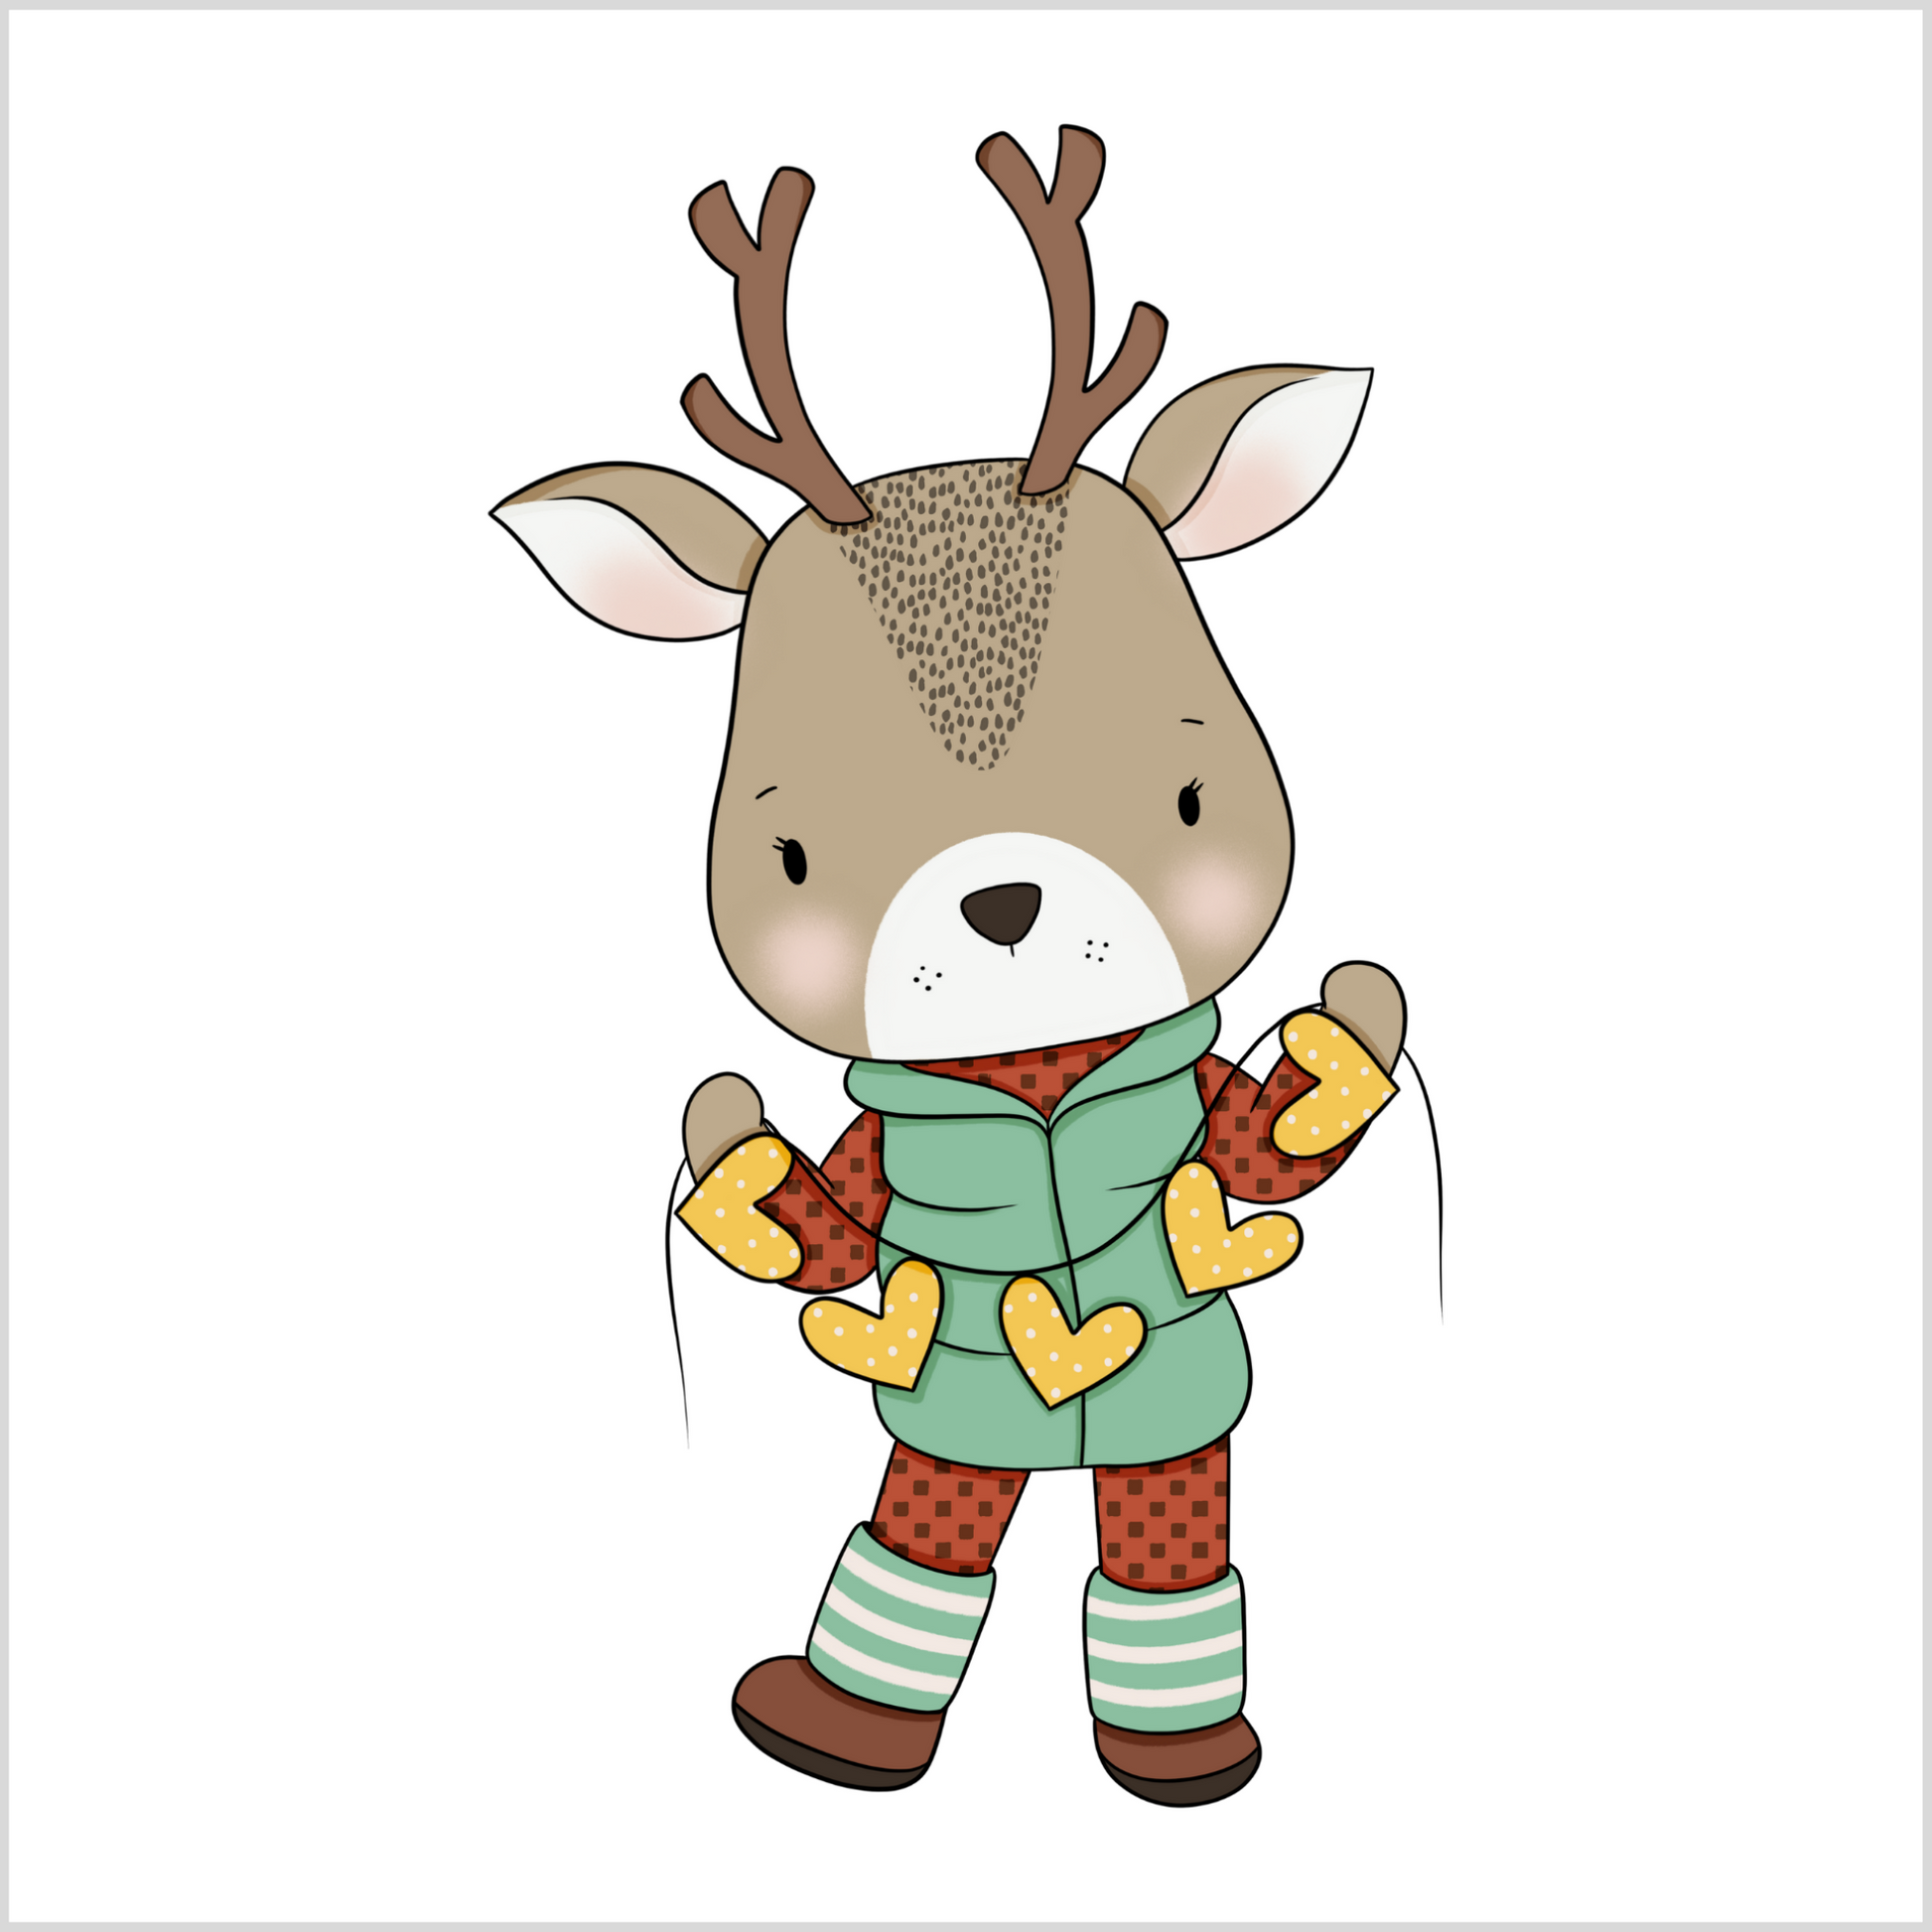 Grafisk motiv som illustrerer en reinsdyr-gutt som holder en trådlenke med gule hjerter. Han har på seg rød bukse og genser, og en grønn boblevest. På hodet har han to horn.